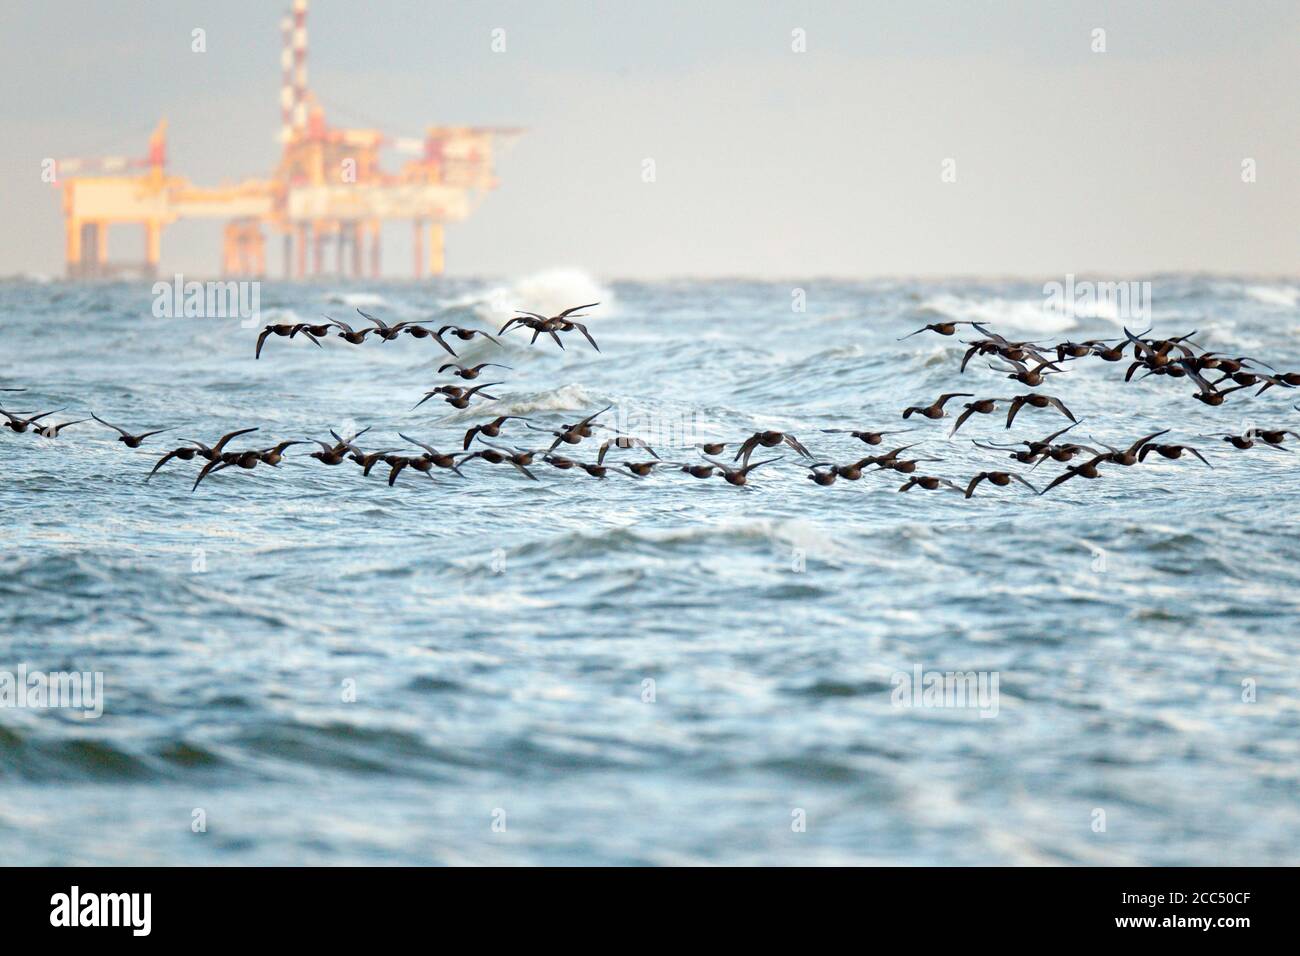 branta bernicla, gregge che sorvolano il mare, che migrano lungo la riva del Mare del Nord, con una piattaforma petrolifera in background, Foto Stock